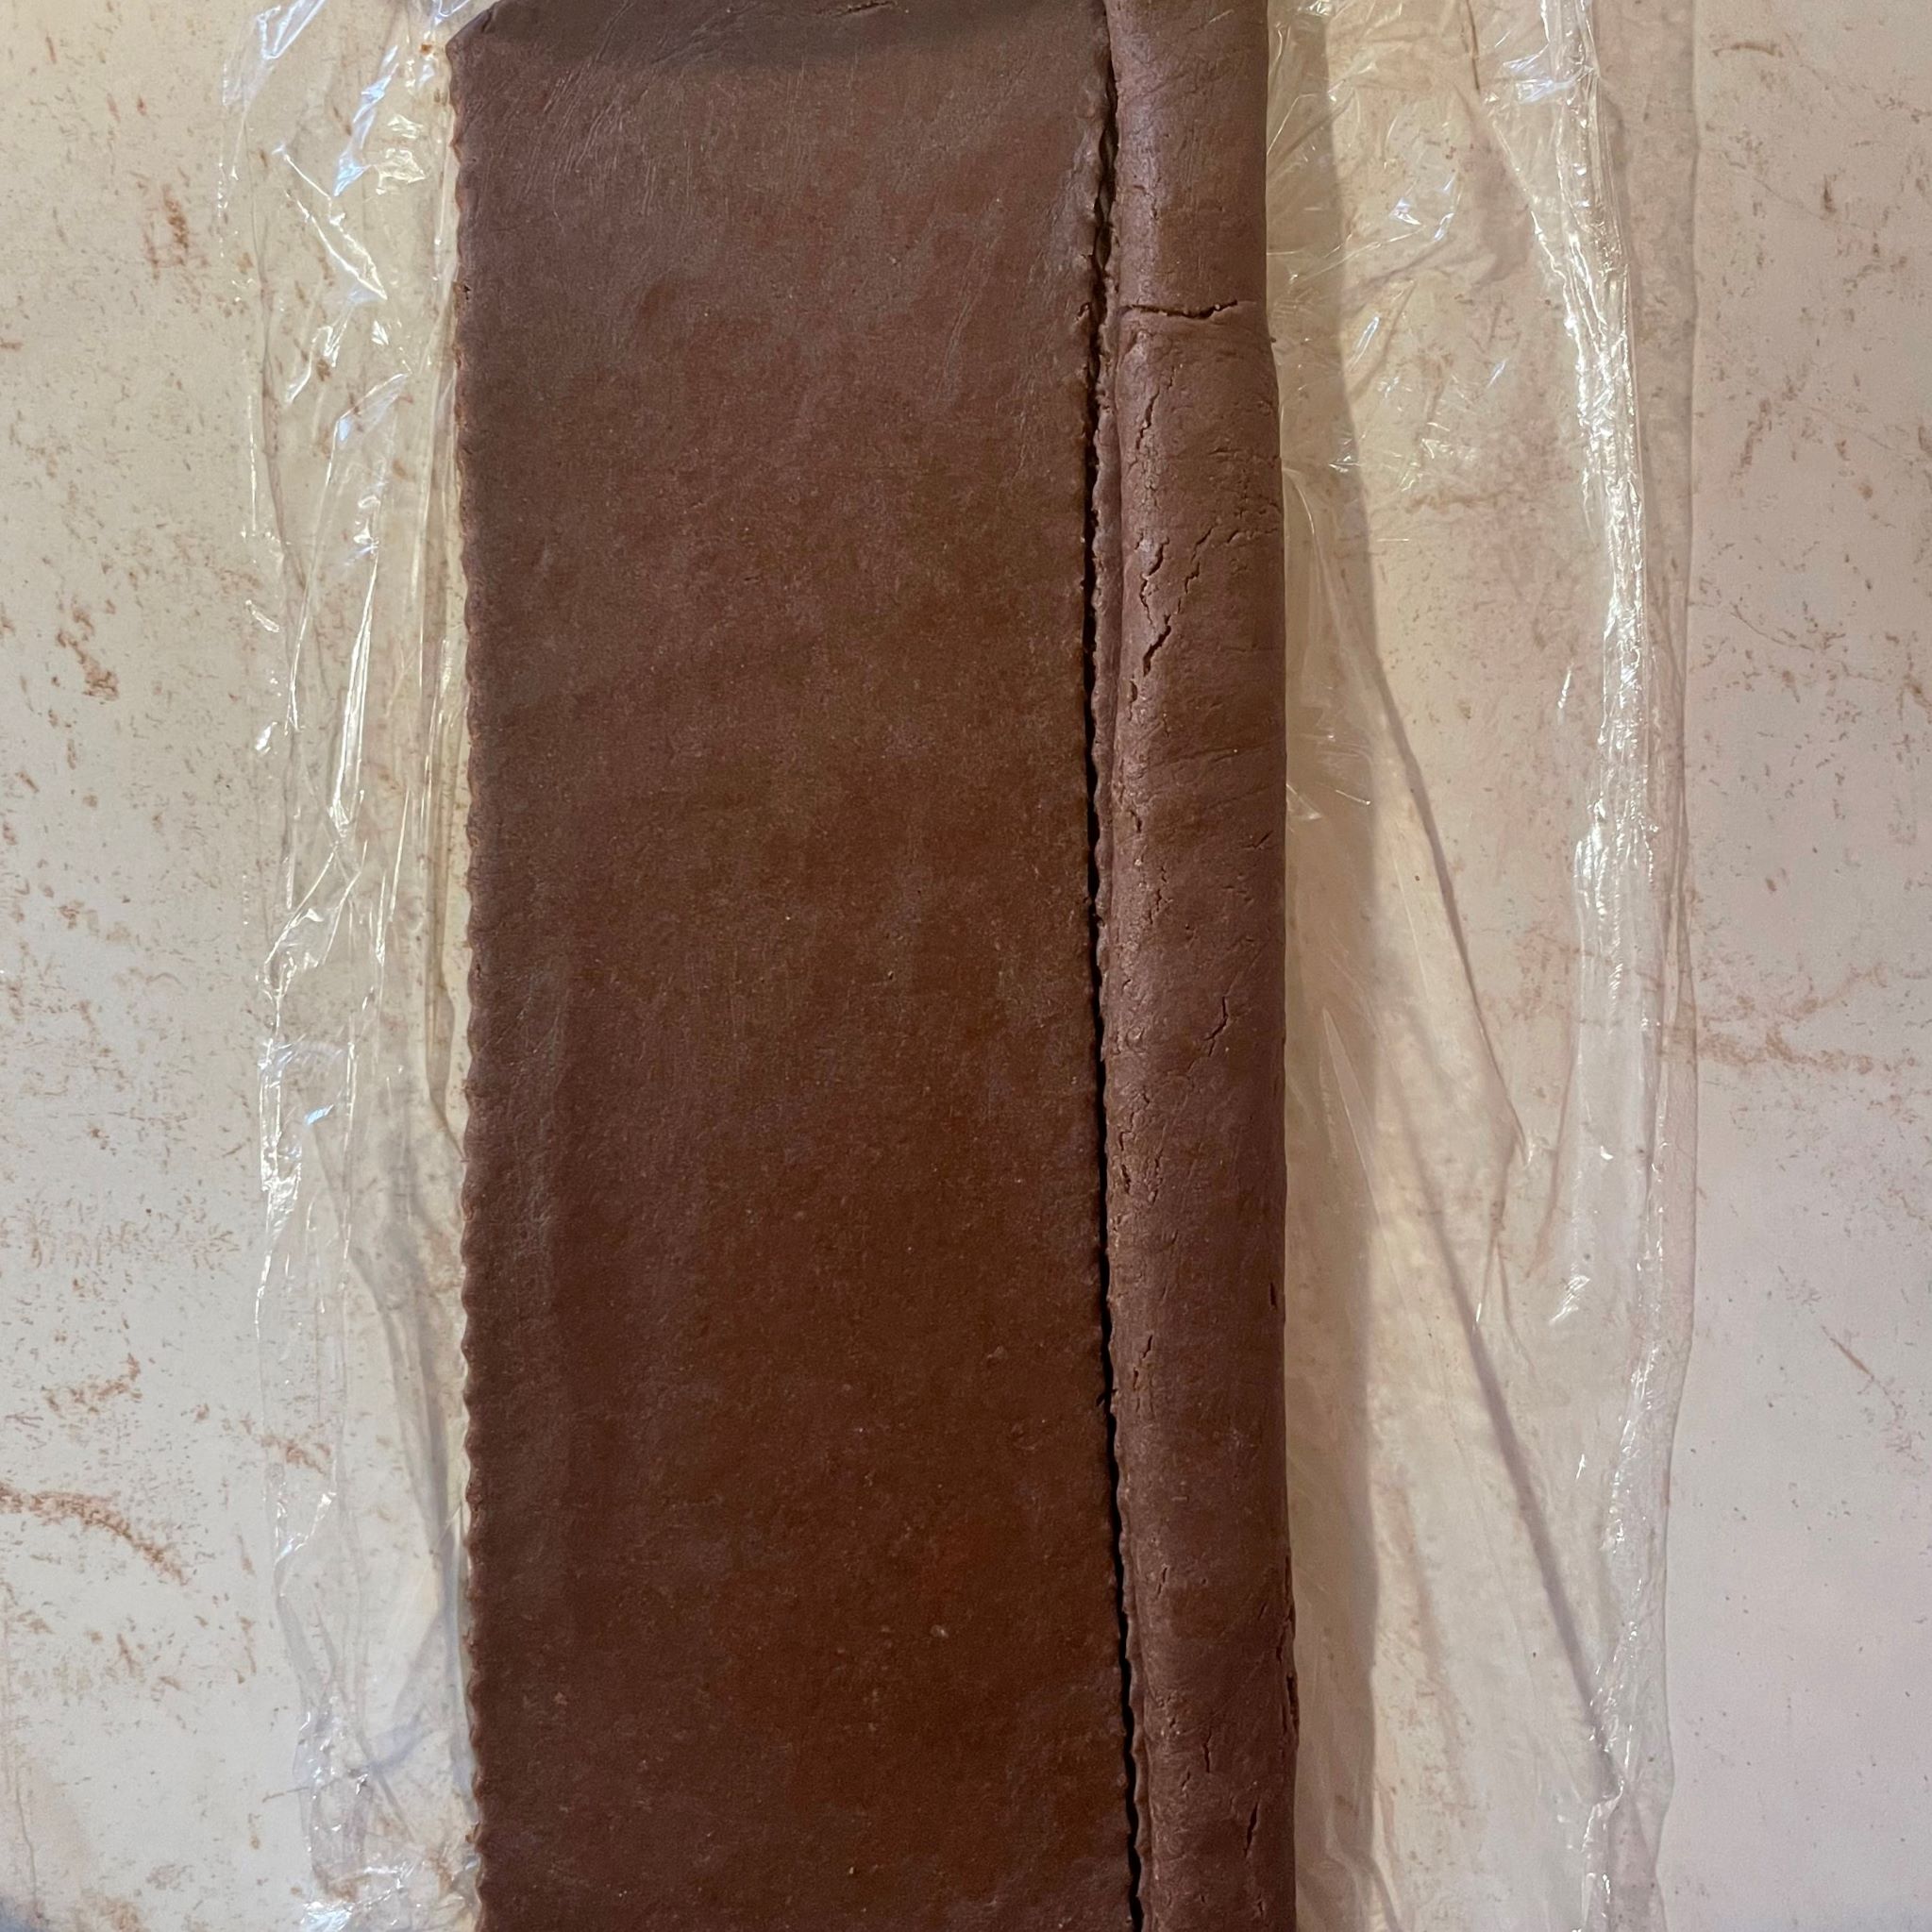 Obdĺžnik rozvaľkaného kakaového cesta na okraji náplň zo slivkového lekváru a perníku zatočená do cesta mramorové pozadie